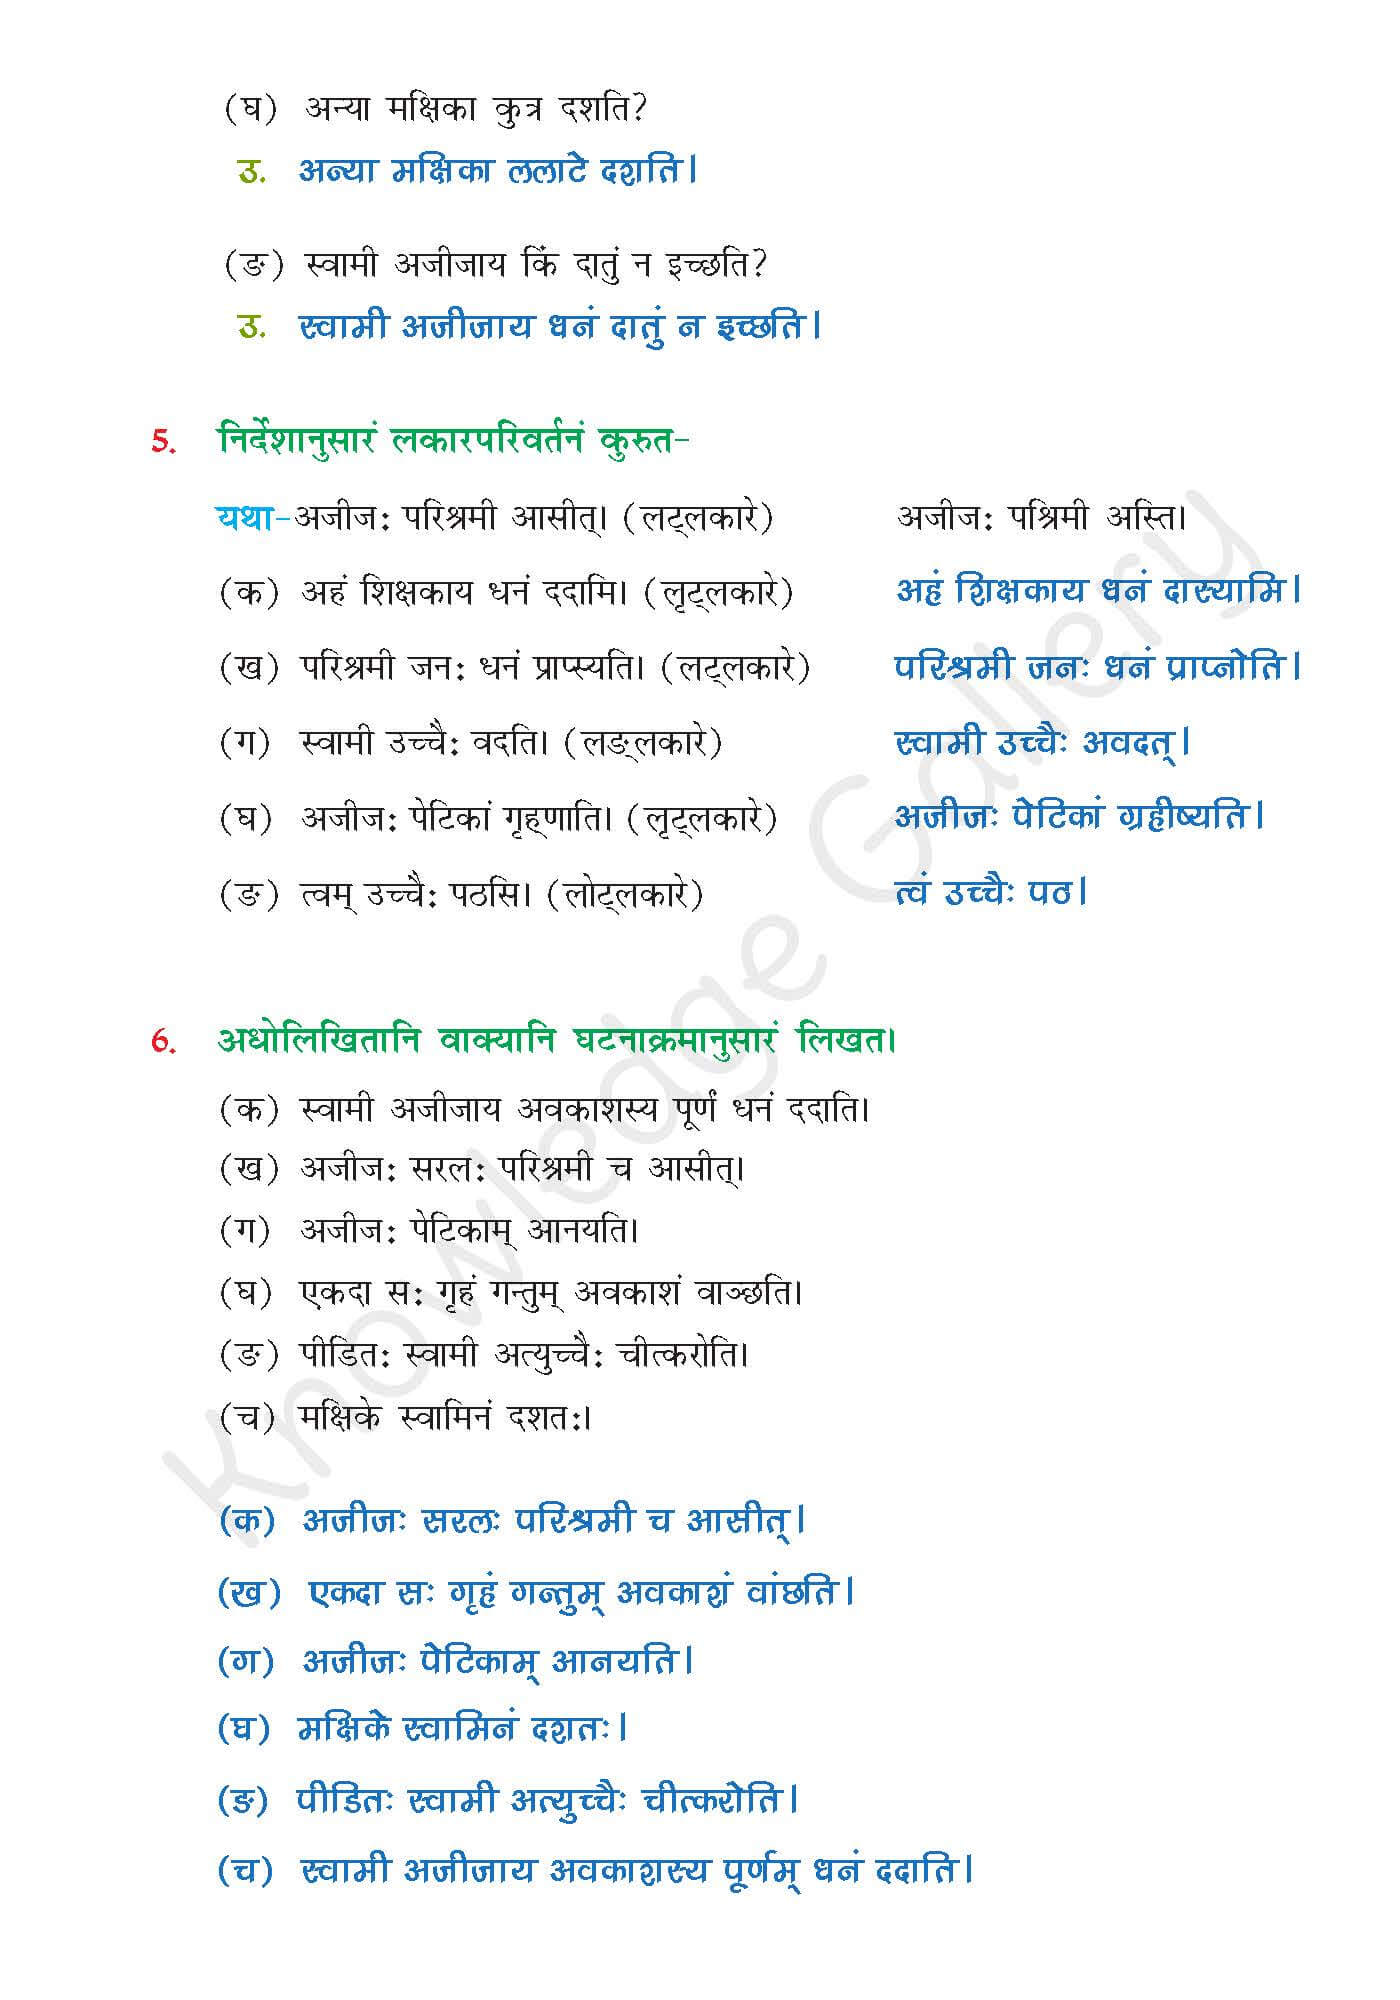 NCERT Solution For Class 6 Sanskrit Chapter 14 part 5